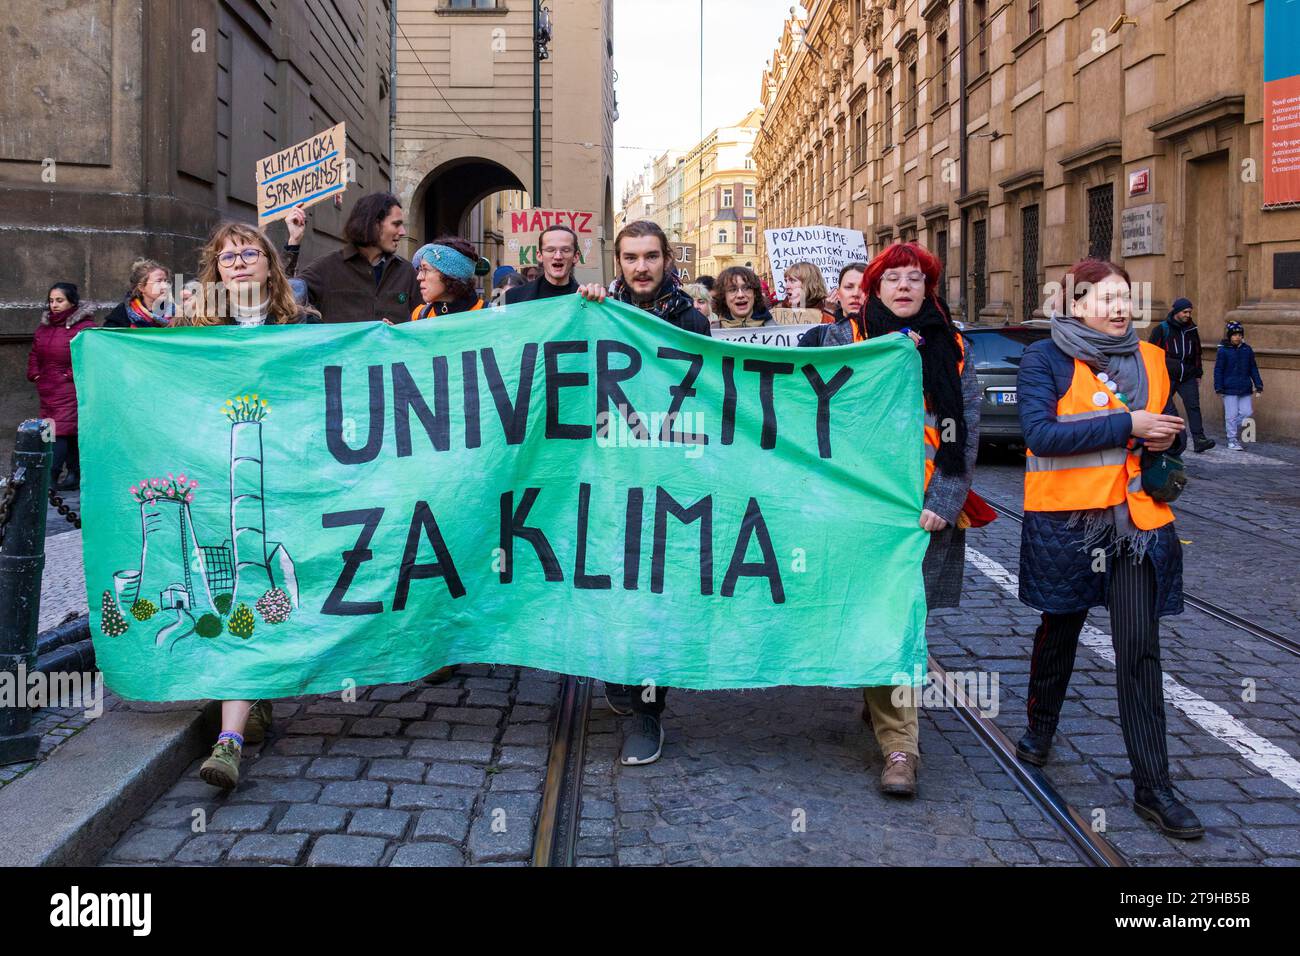 Manifestation de la Journée des étudiants, manifestation contre le changement climatique, Prague, République tchèque, Europe Banque D'Images